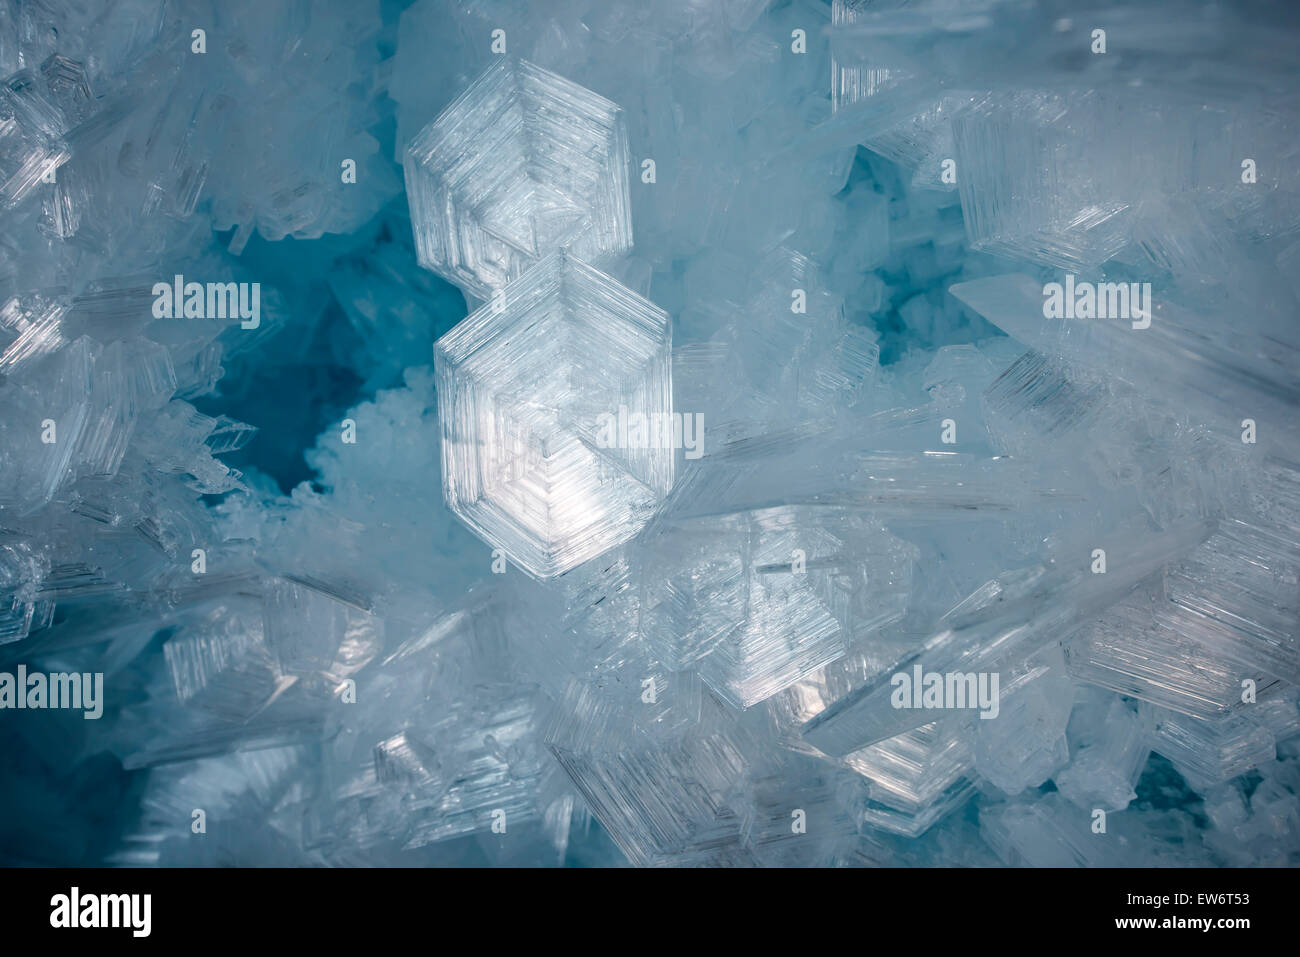 De gros cristaux de glace à l'intérieur d'une grotte de glace, l'île de Ross, en Antarctique. Banque D'Images